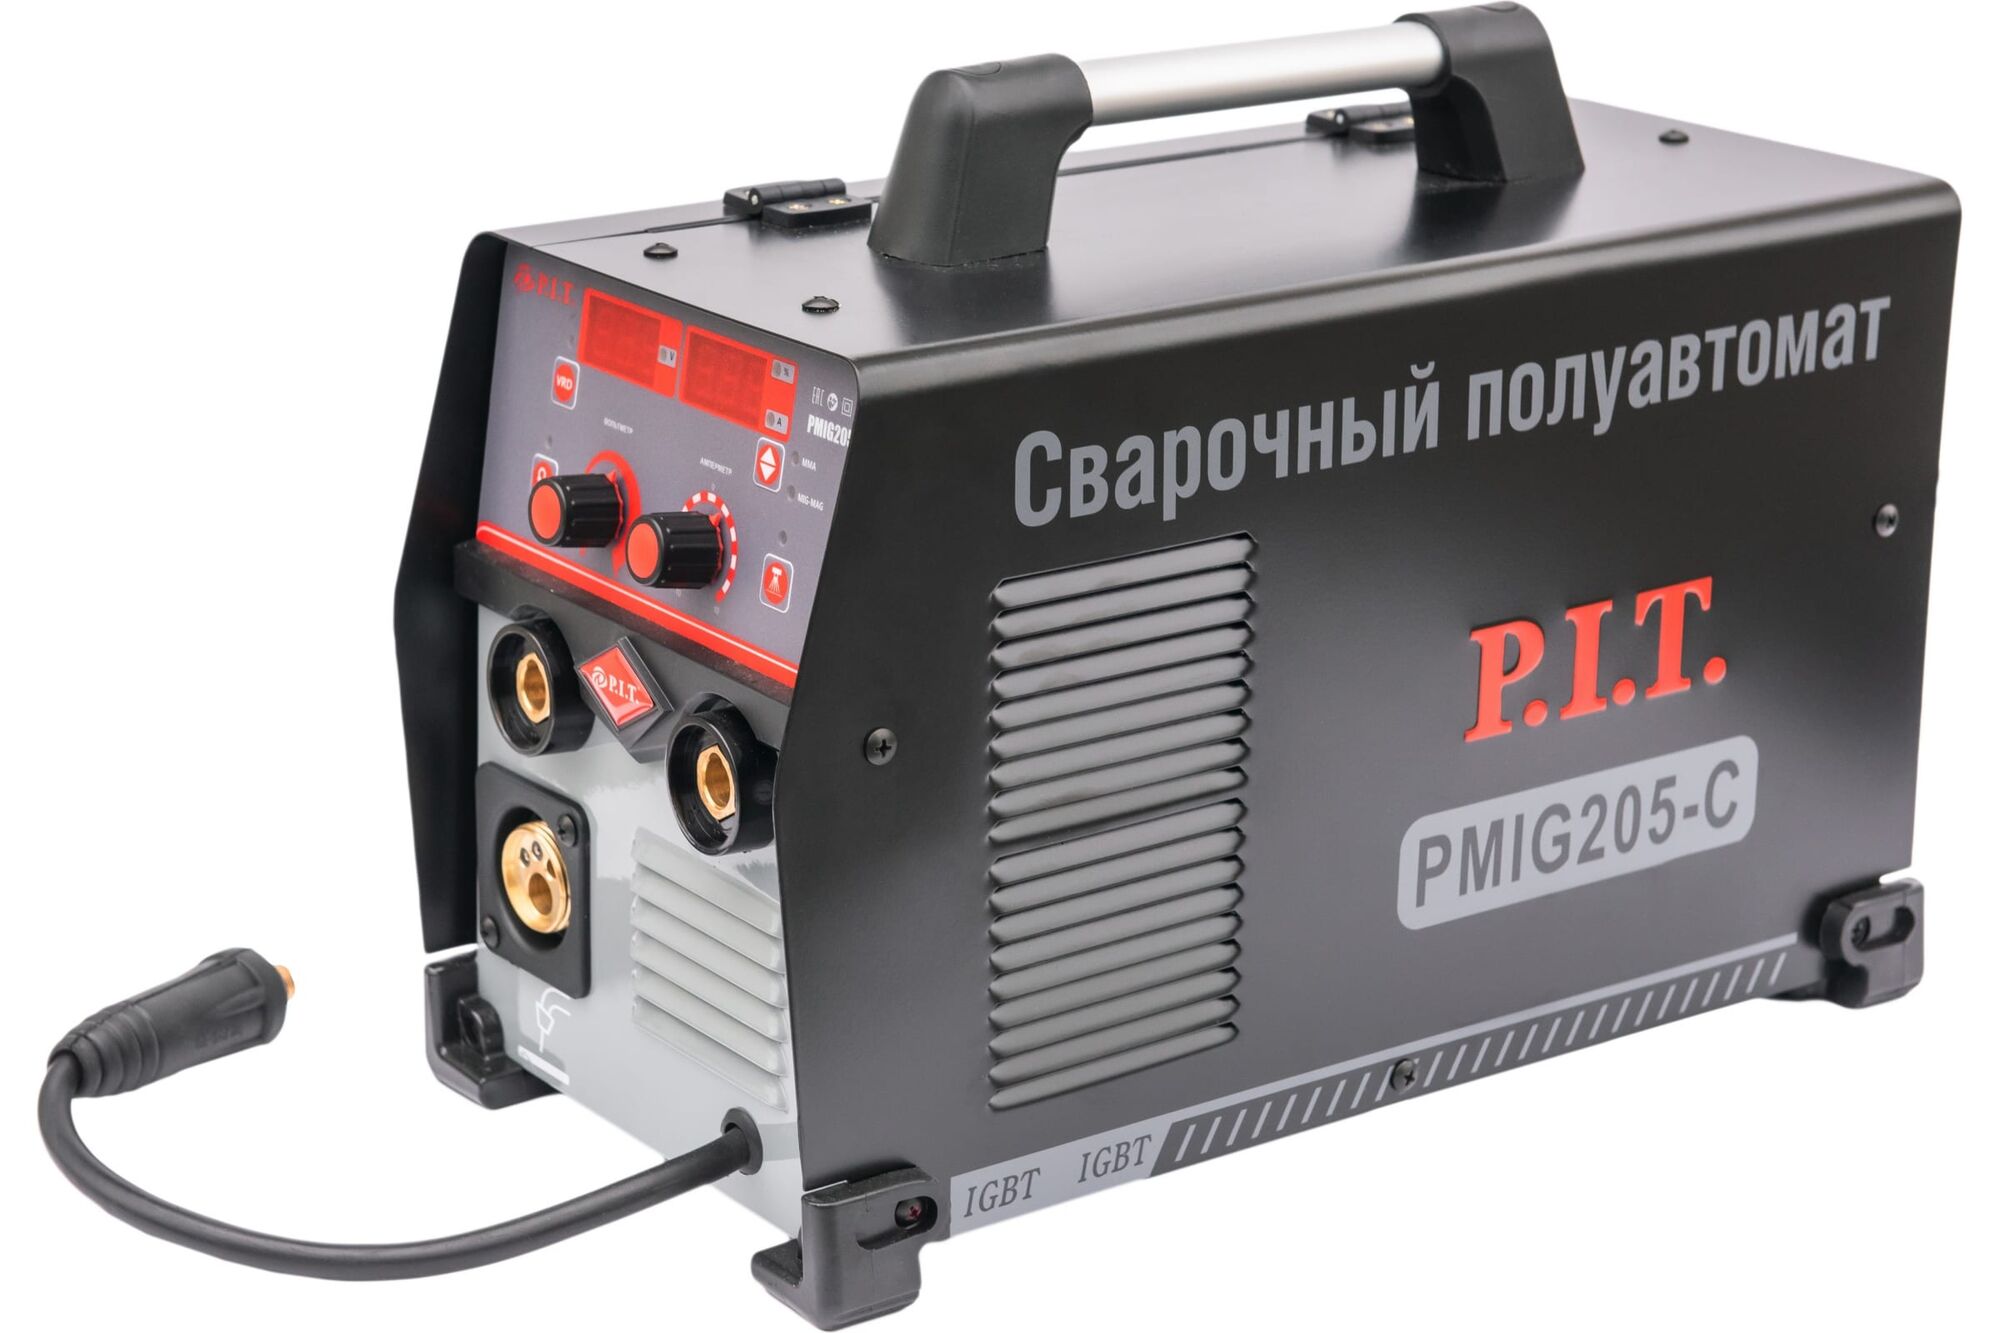 Сварочный полуавтомат P.I.T. 205А, 6,8 кВт PMIG205-C